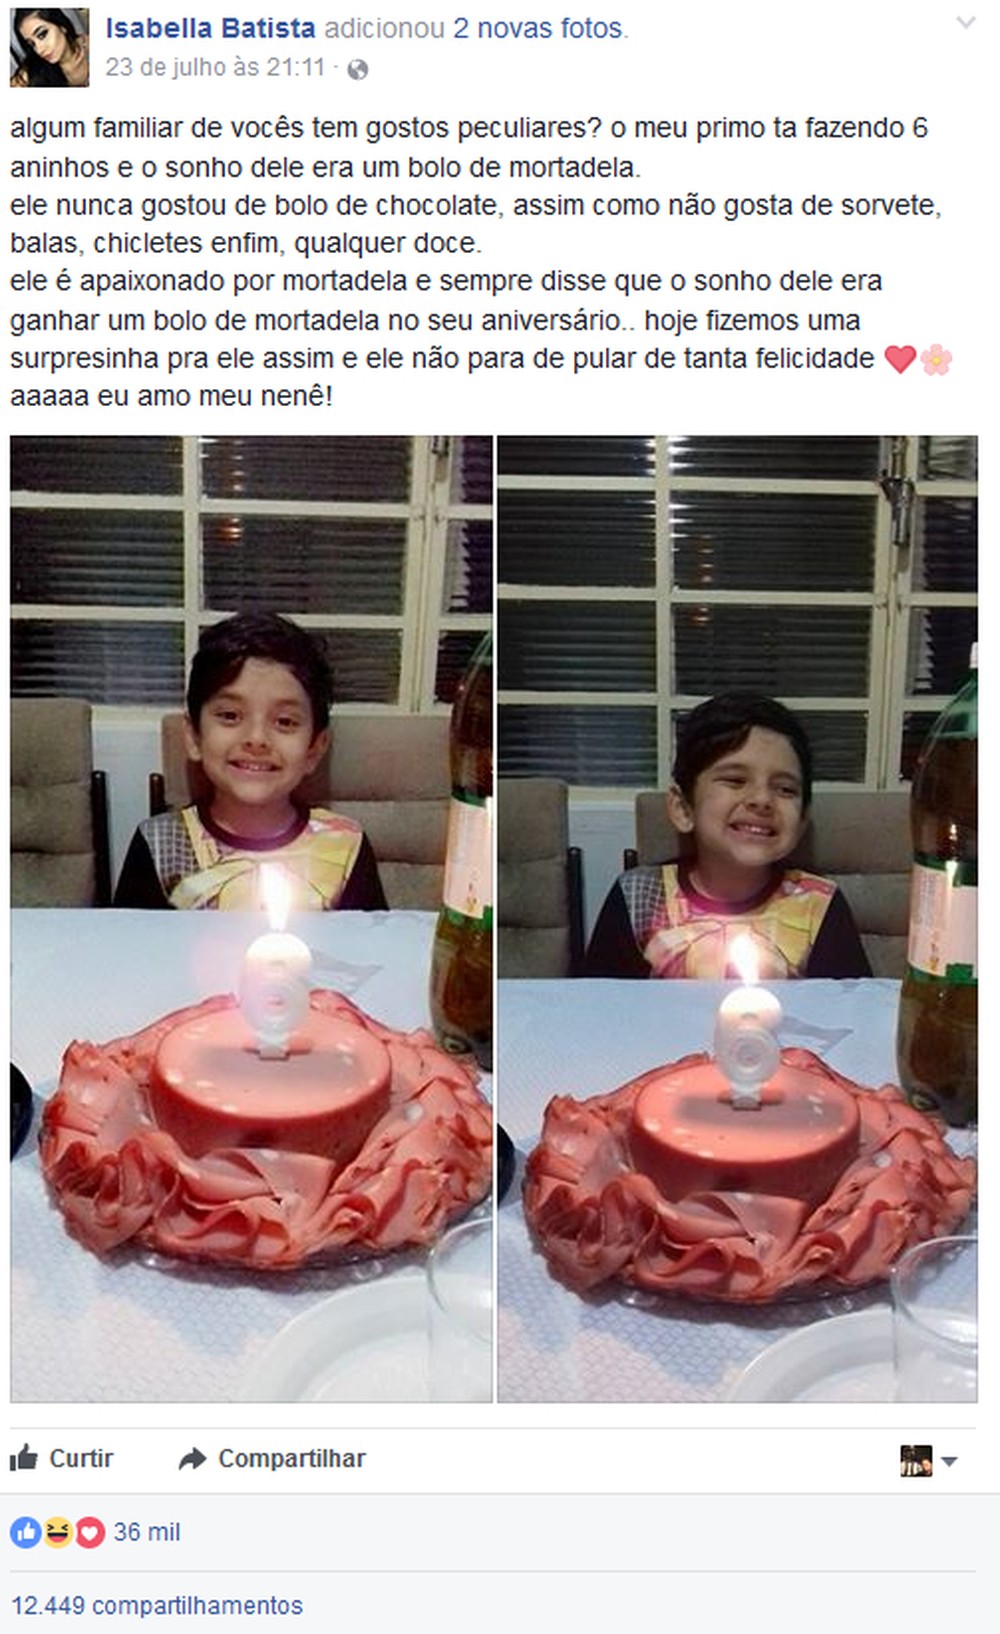 print da postagem de Isabella, prima de Isaac, com fotos do menino e seu bolo de mortadela